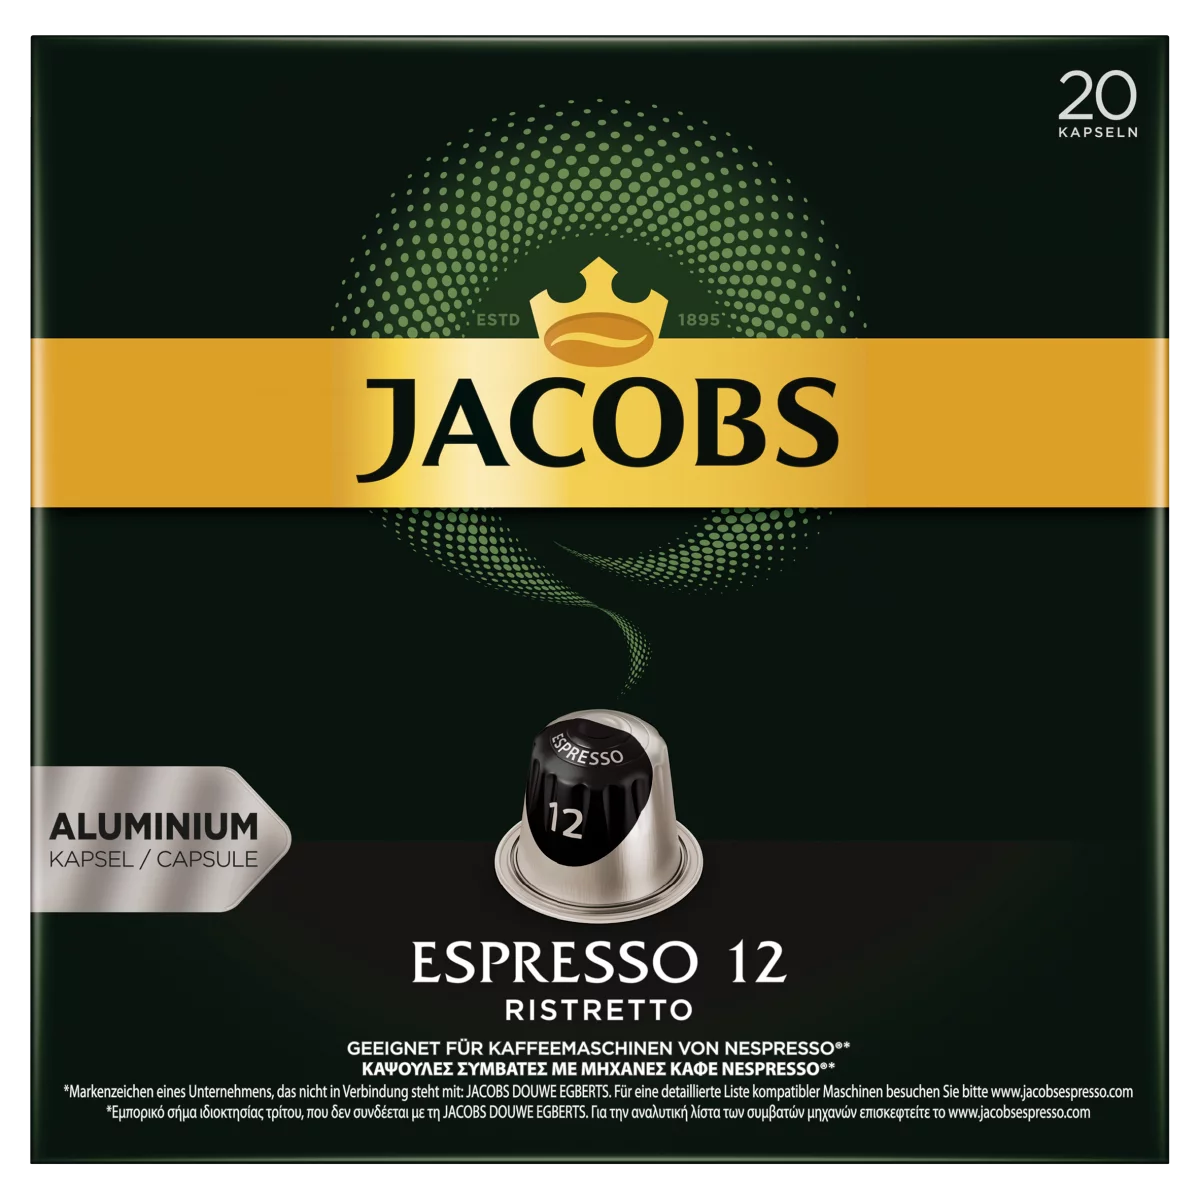 Jacobs Espresso 12 Ristretto őrölt-pörkölt kávé kapszulában 20 db 104 g